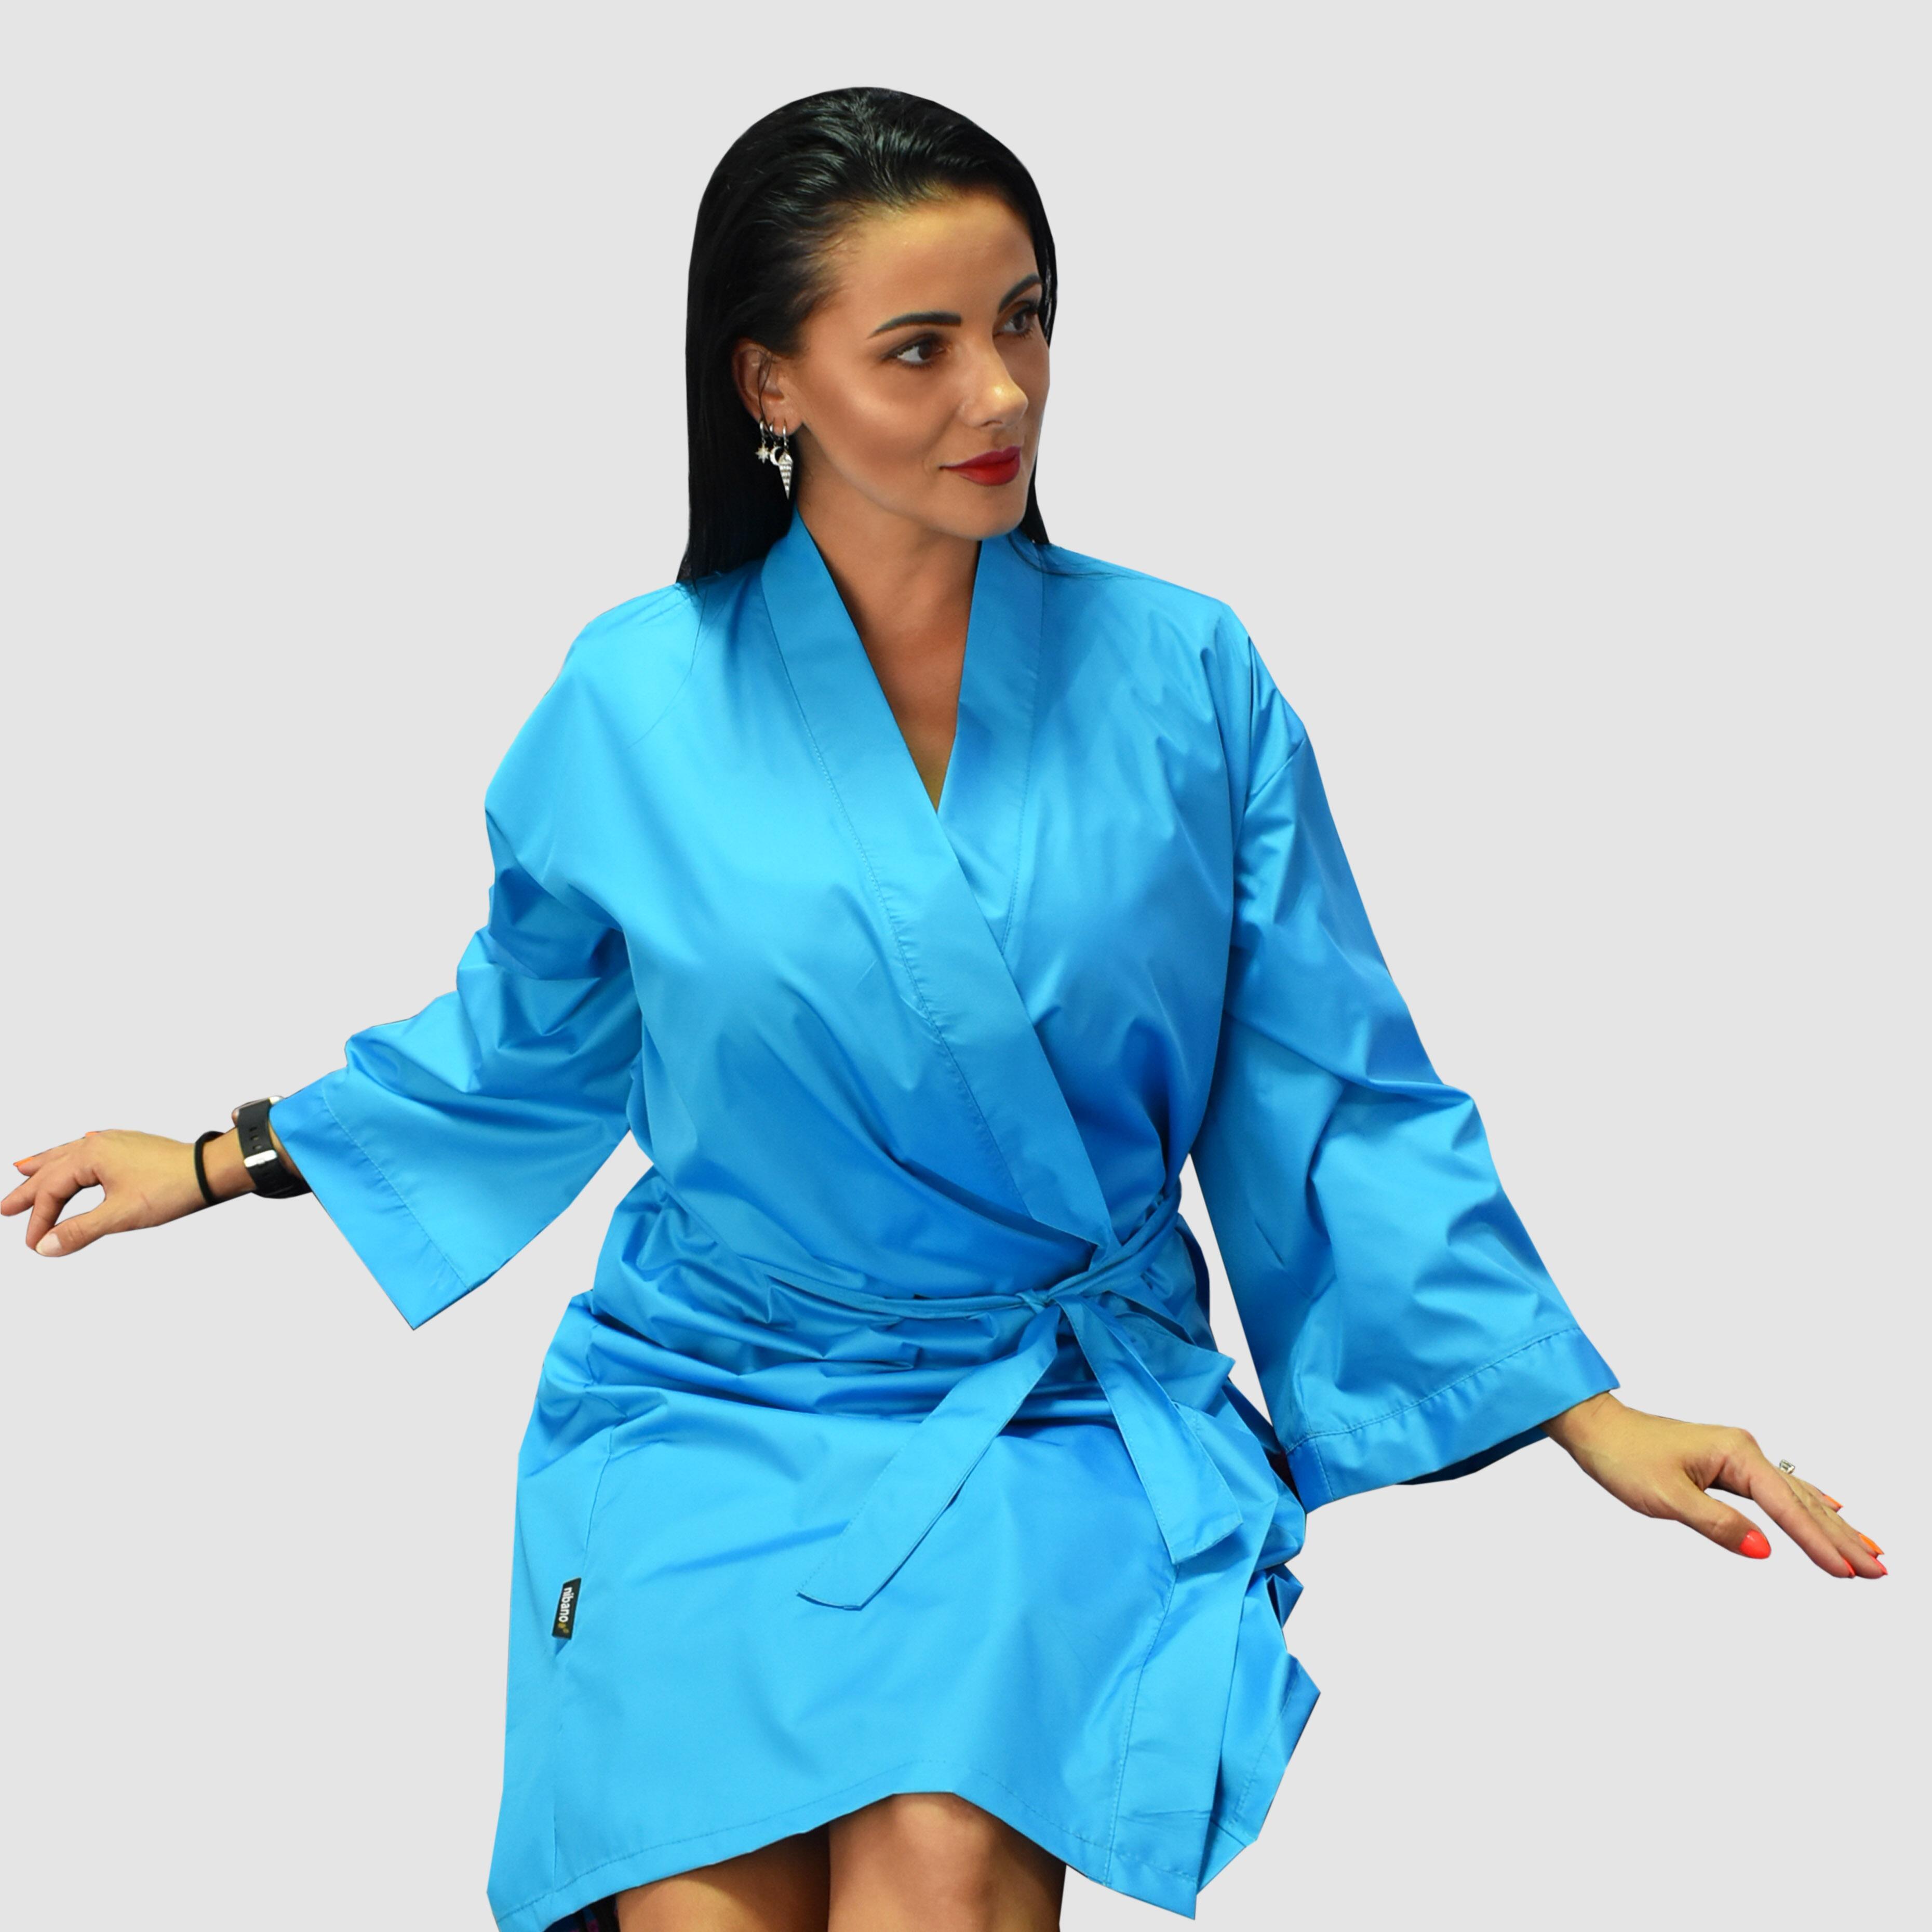 Nibano Salon Kimono Gown or robes Turquoise